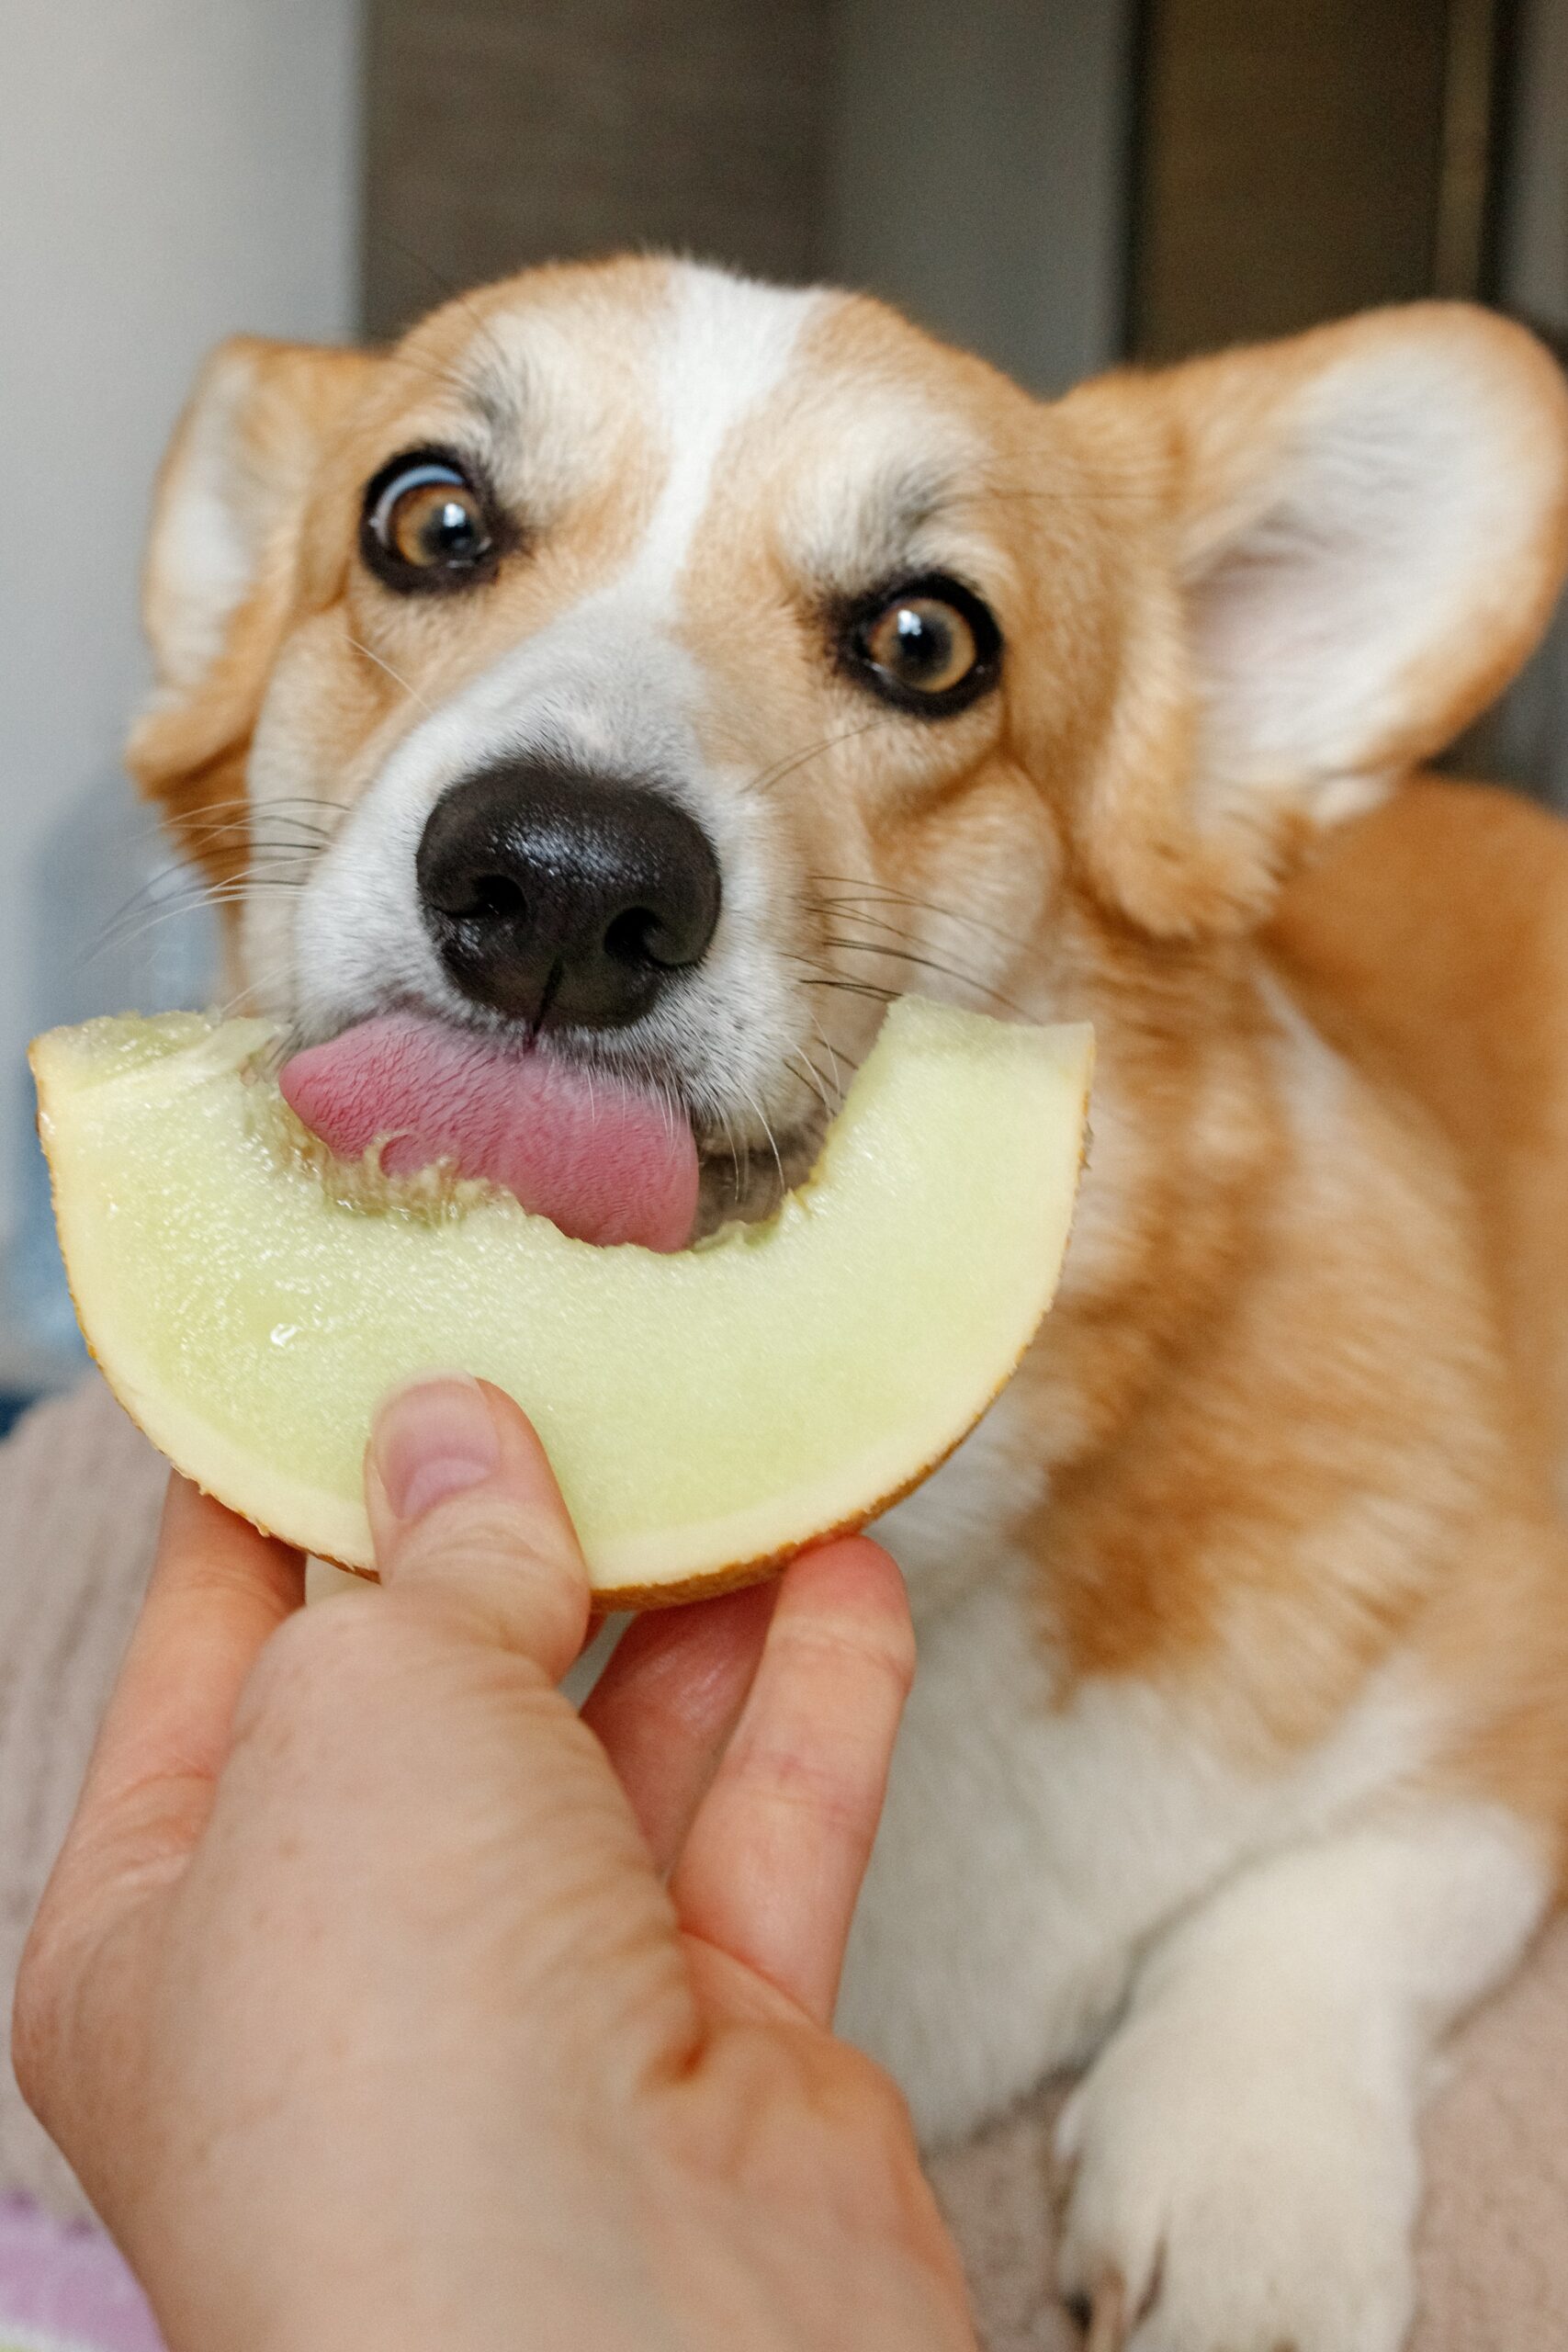 do dogs have taste buds